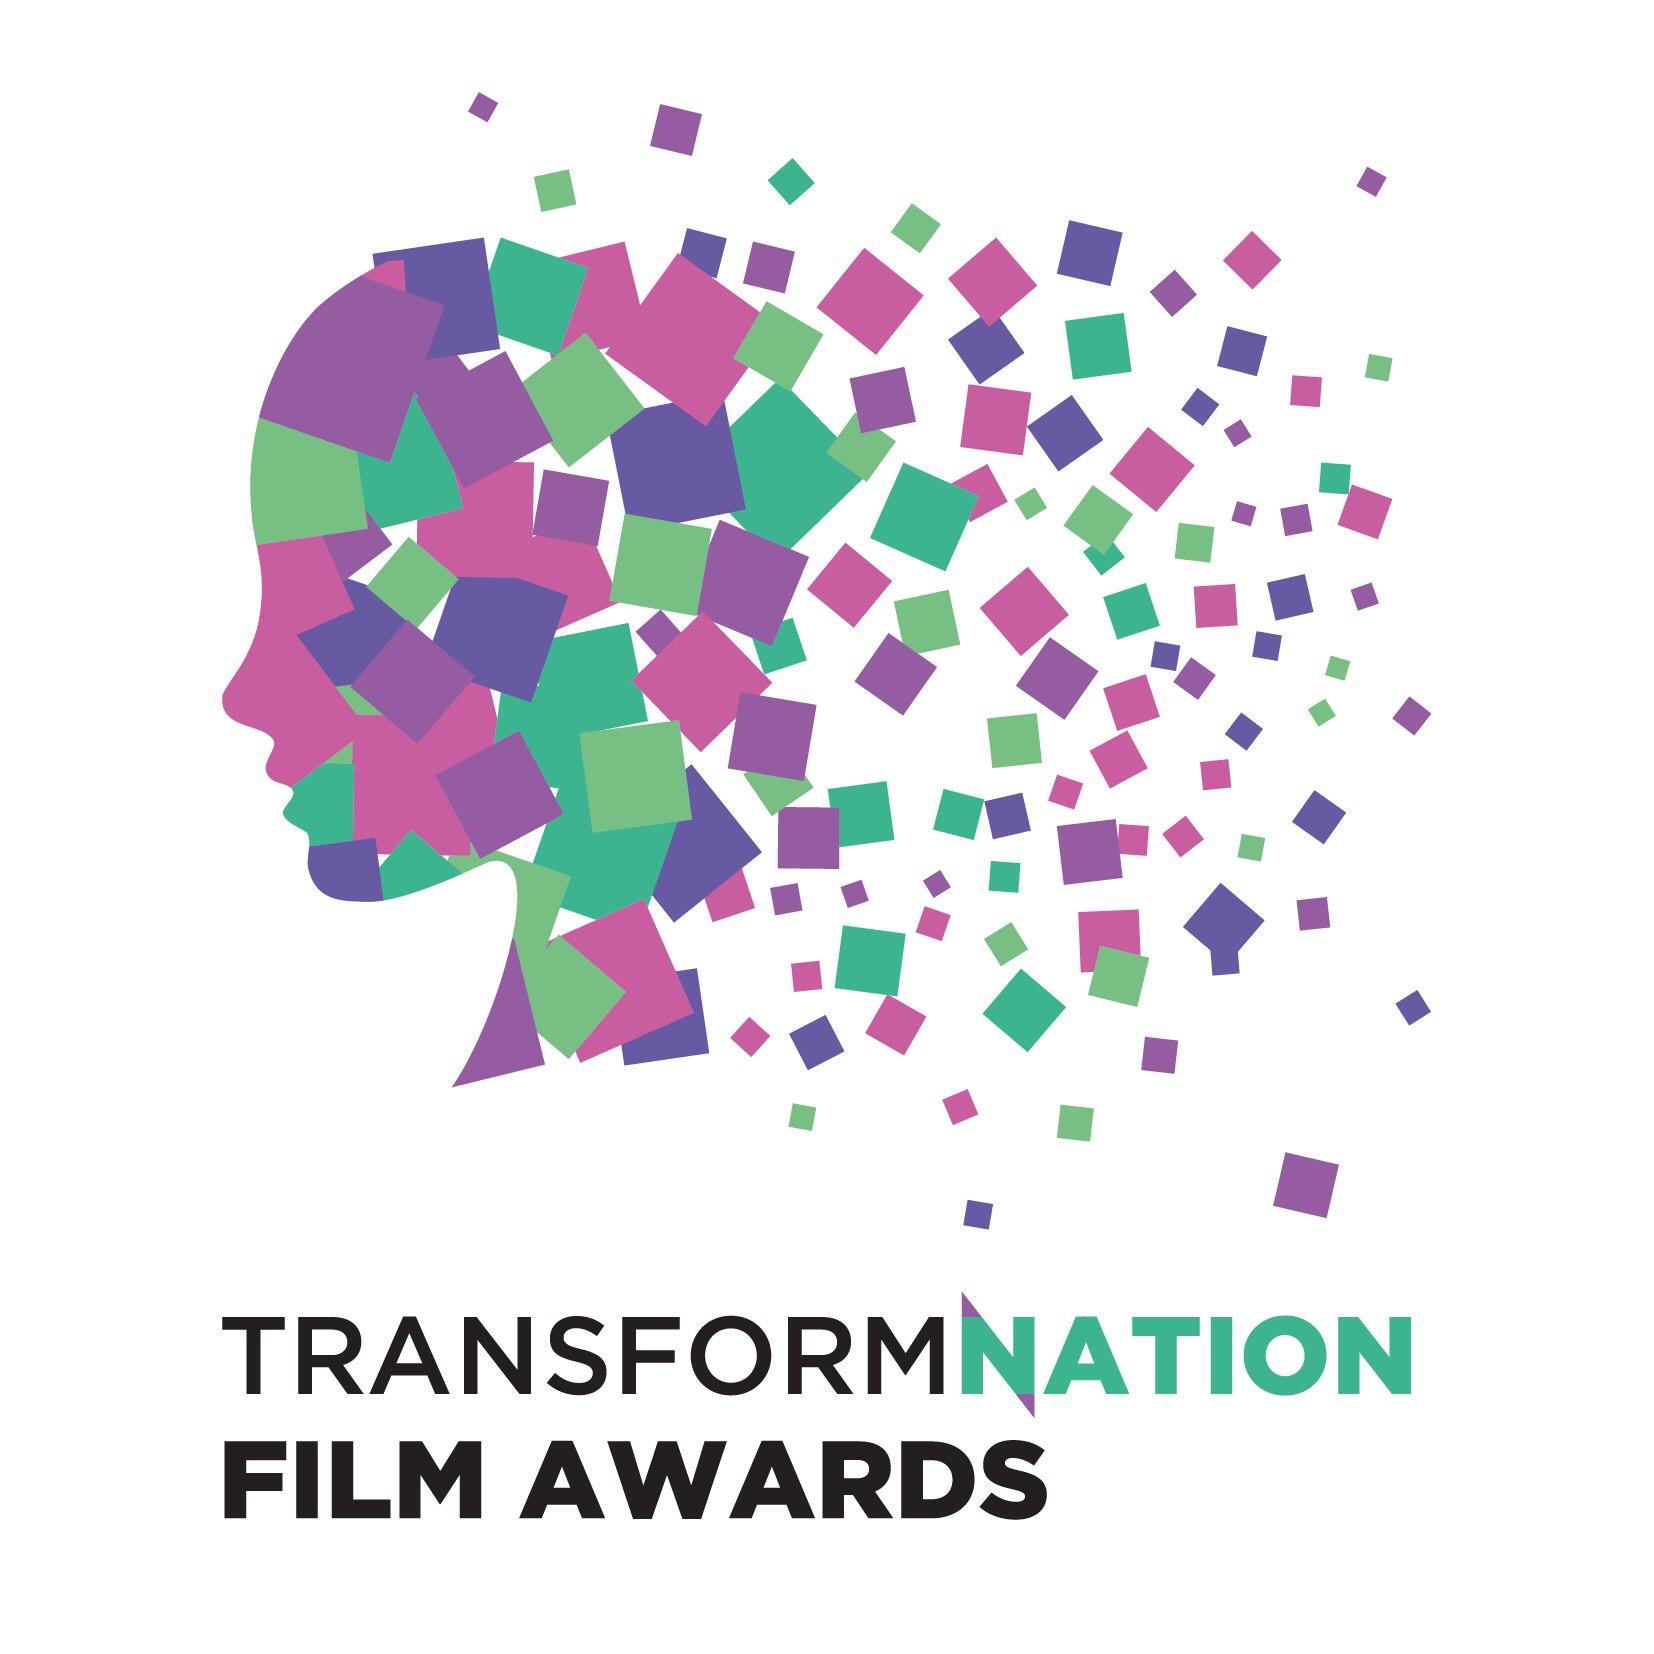 Объявлены лауреаты первой международной кинопремии TransformNation Film Awards